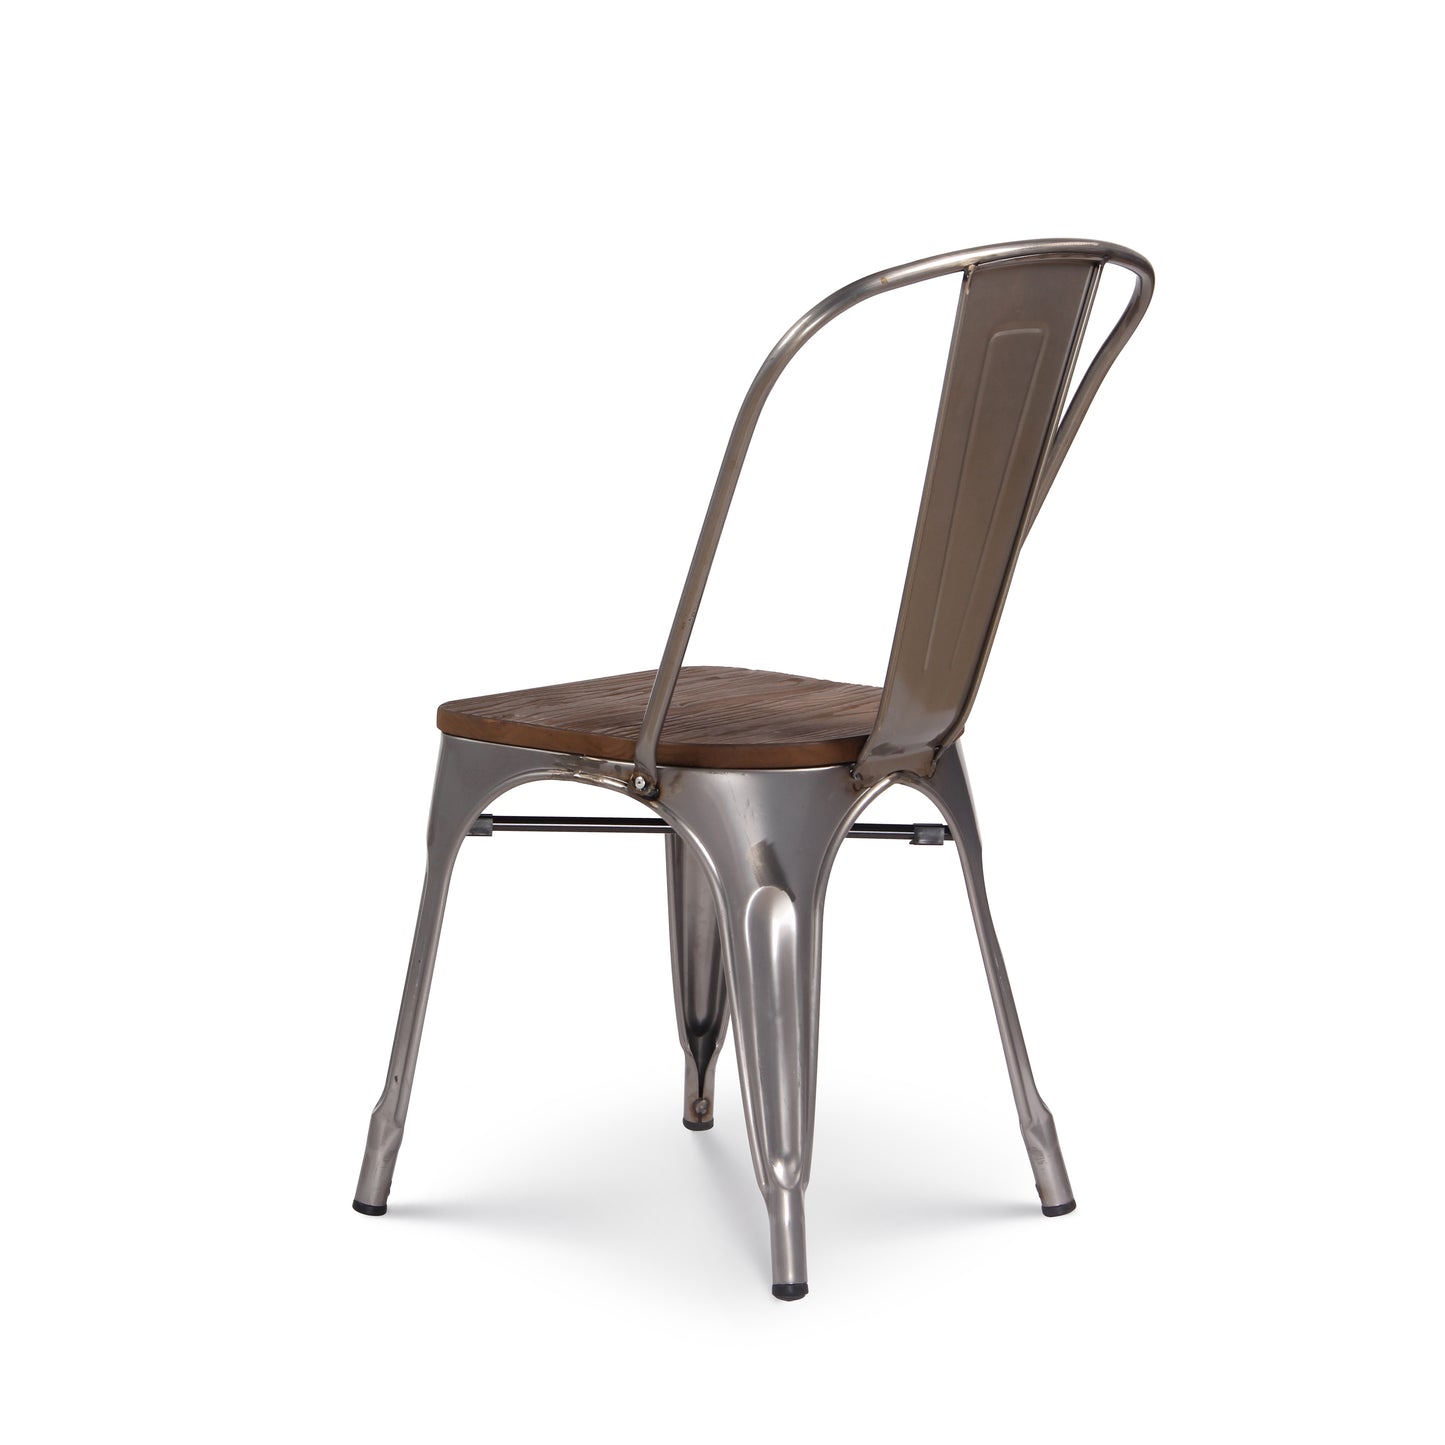 Lot de 4 chaises en métal brut aspect galvanisé et assise en bois foncé - Style industriel